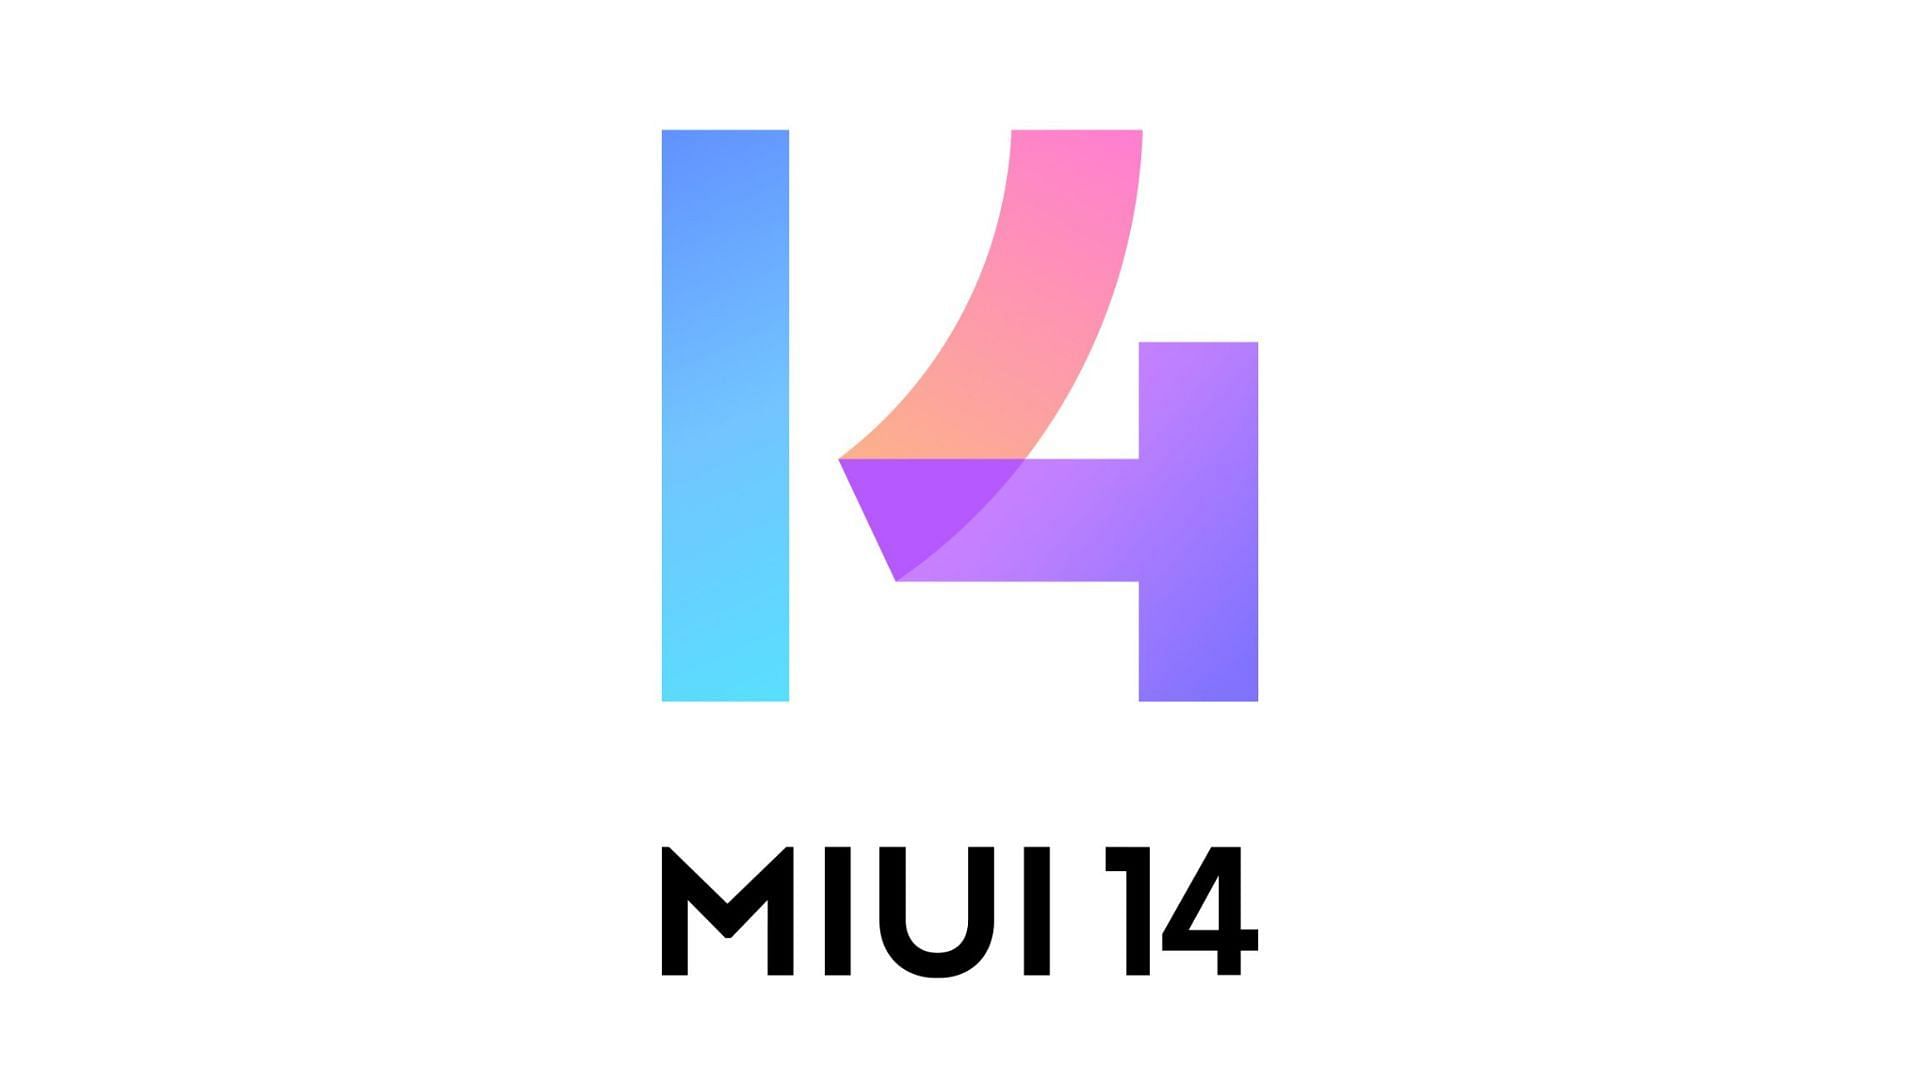 MIUI 14 logo